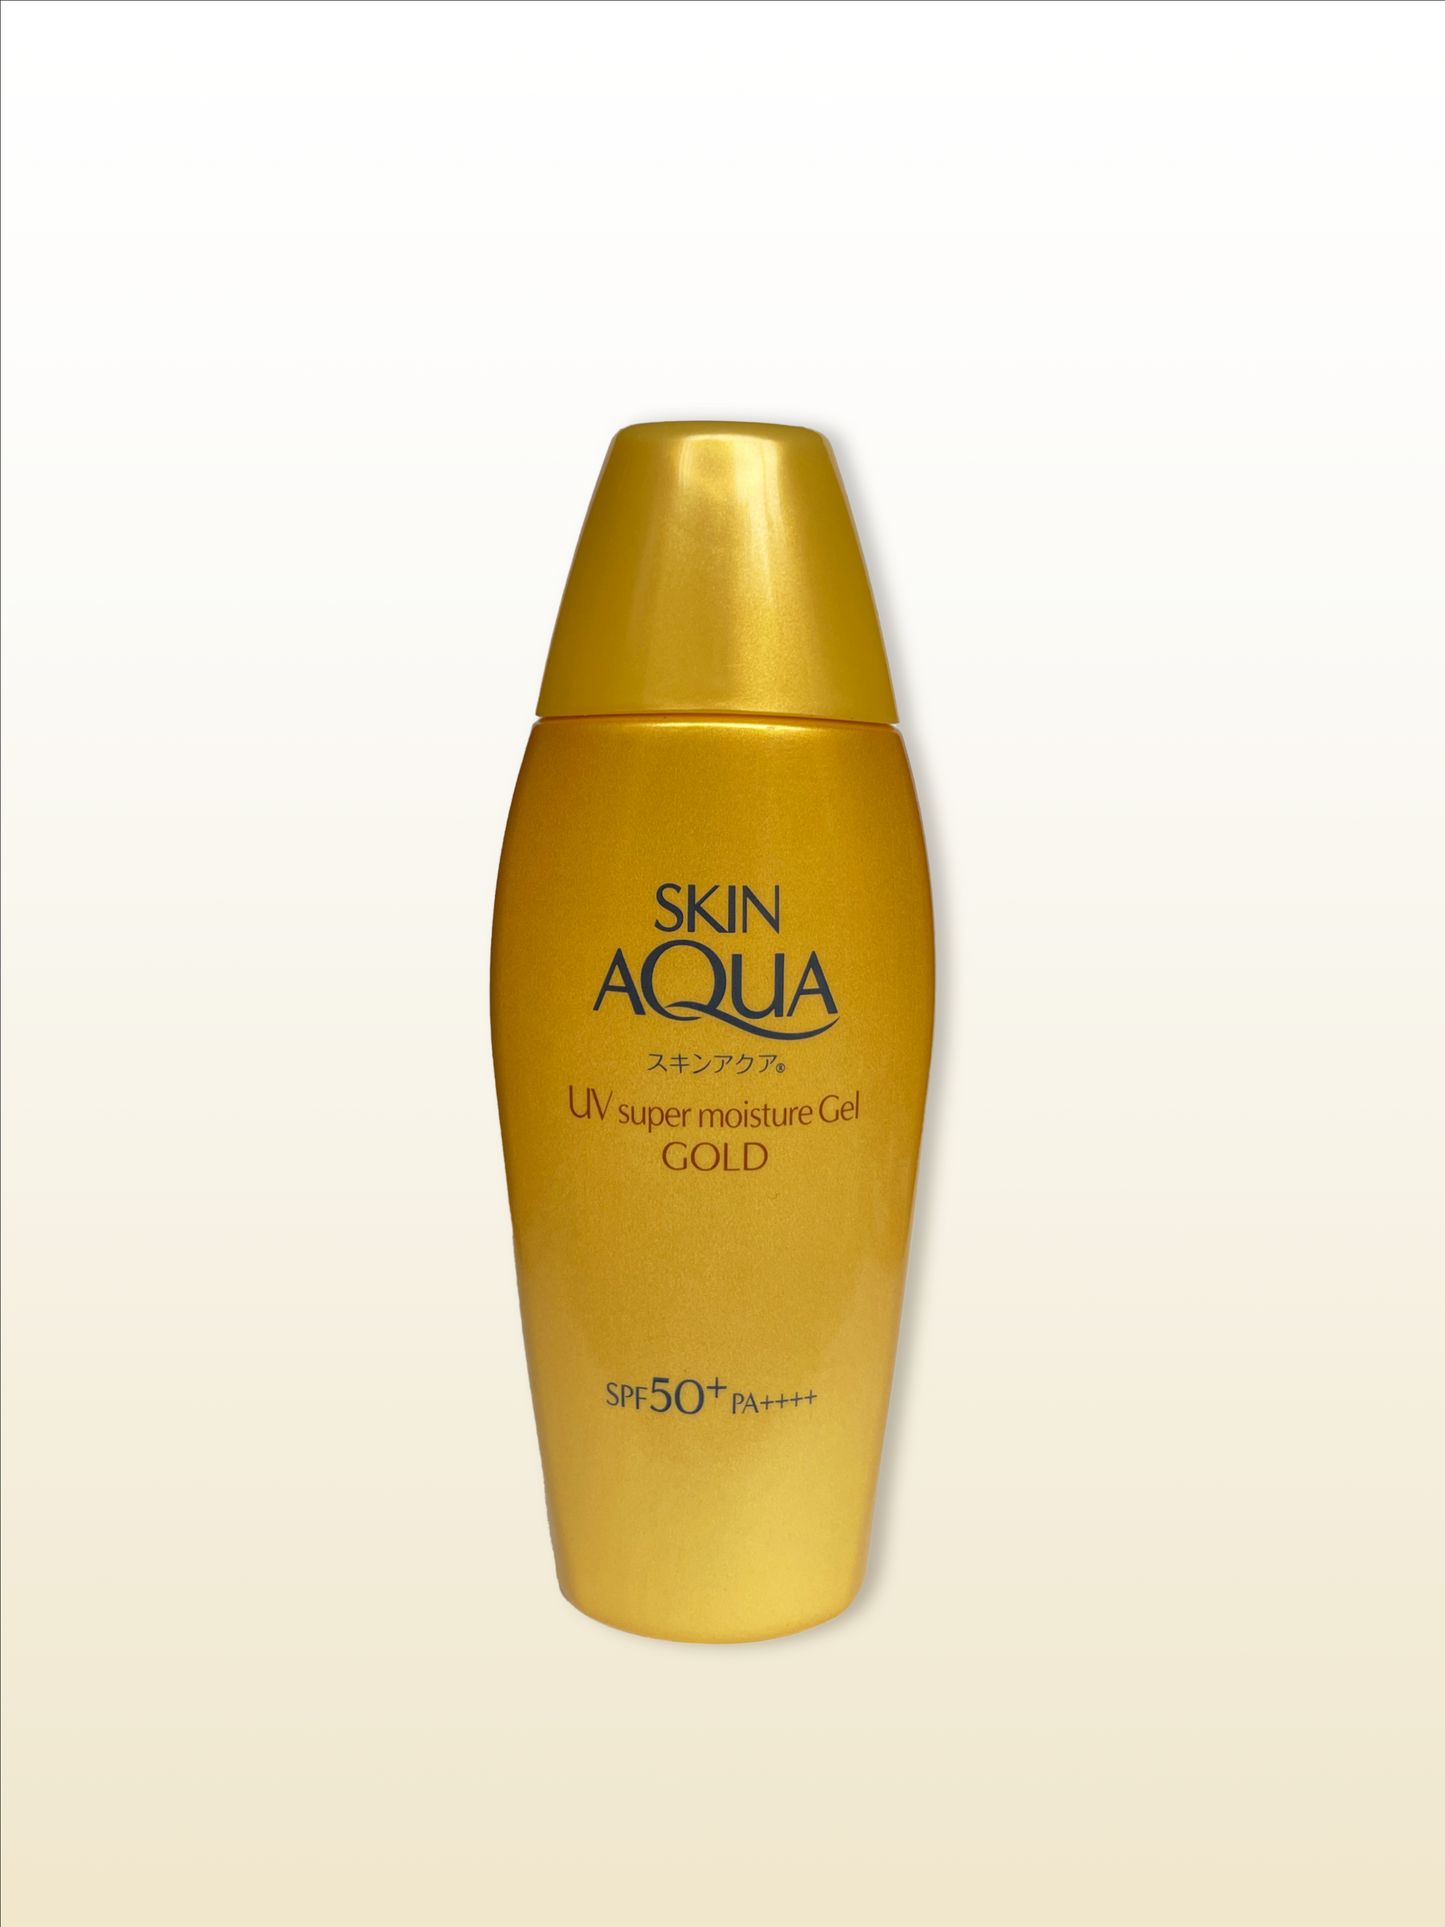 Skin Aqua UV Super Moisture Gel Gold SPF 50+ PA++++ 110g